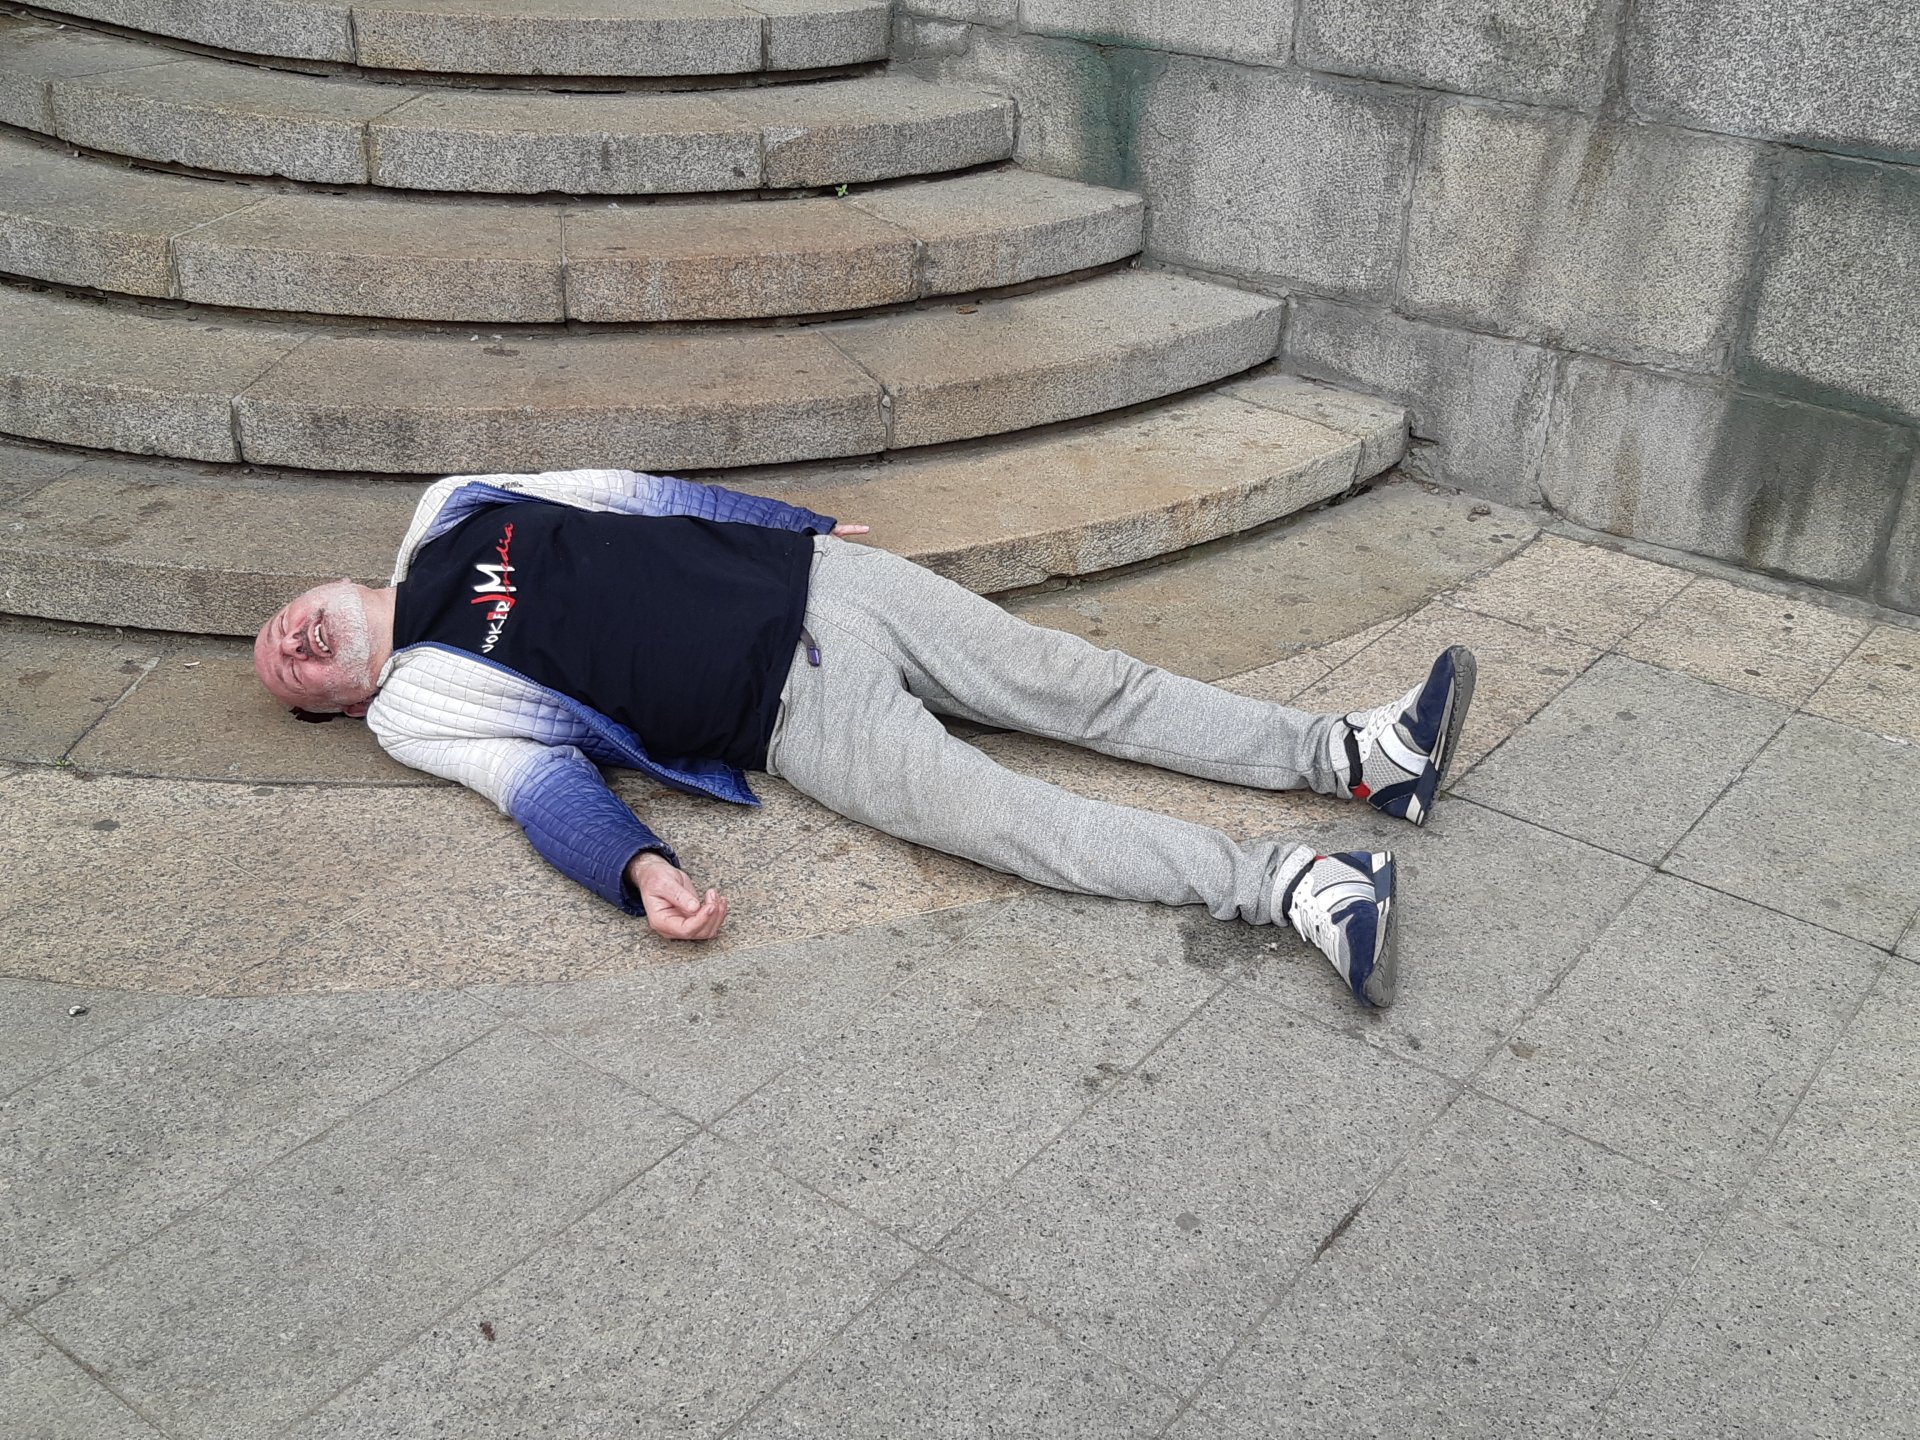 Инфарктна ситуация с полумъртъв мъж пред Съдебната палата в София СНИМКИ 18+